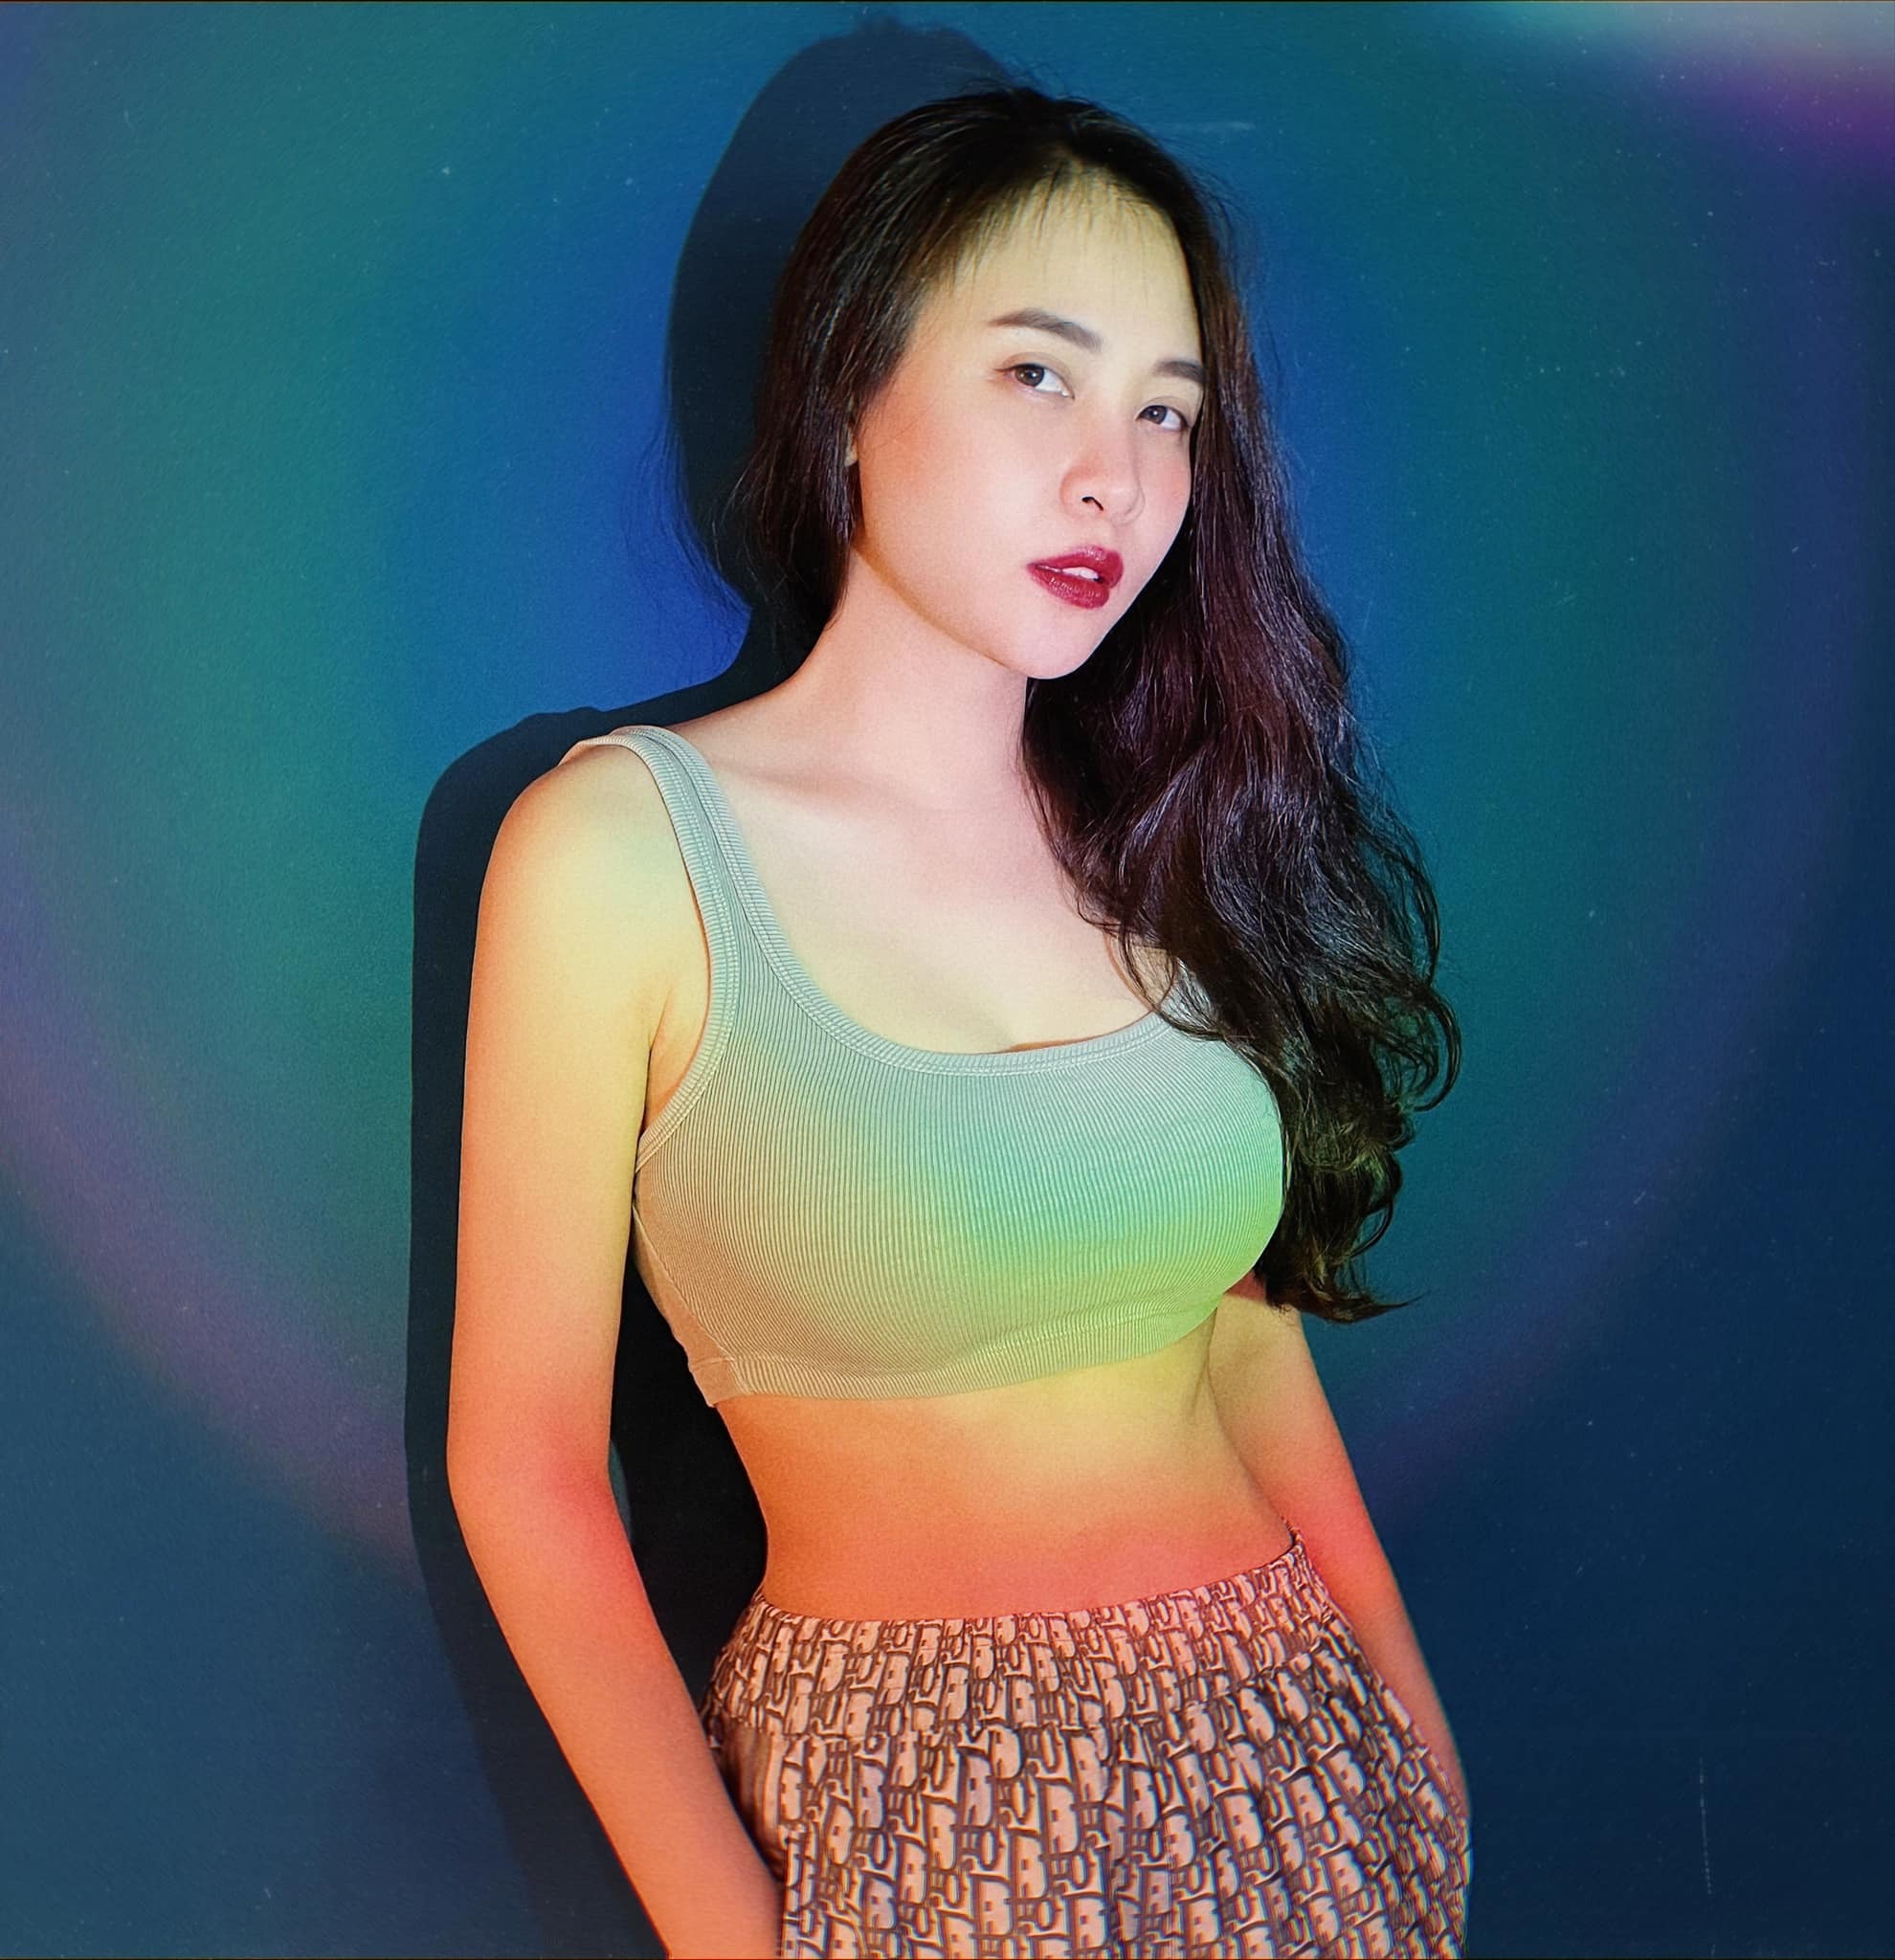 Đàm Thu Trang hoạt động nghệ thuật với tư cách là một người mẫu